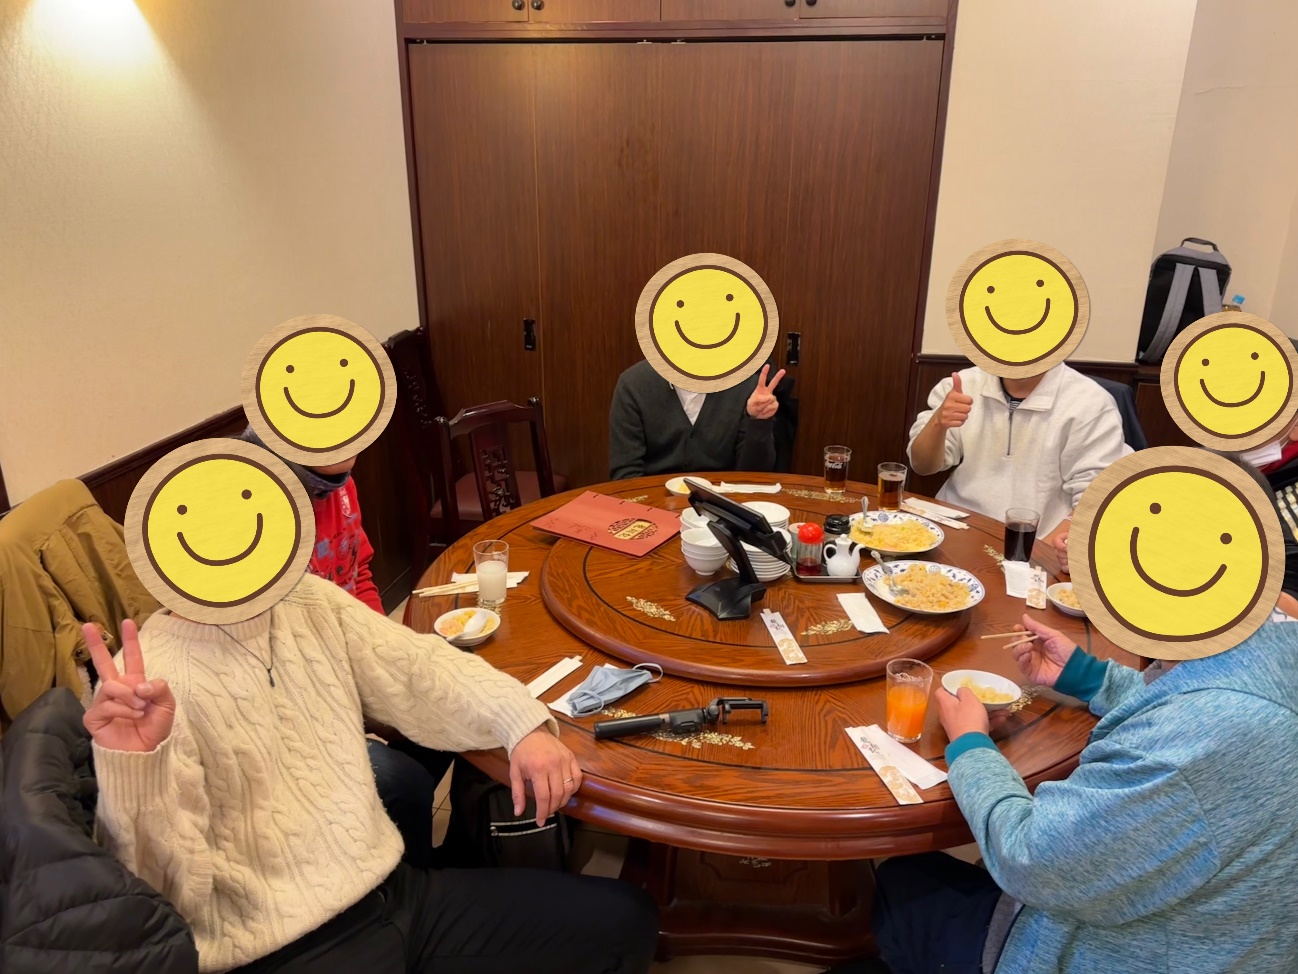 龍翔記の店内はモダンで落ち着いた雰囲気で、個室に案内され回転テーブルを囲むように参加者6名が個室に案内され、着席している様子の写真